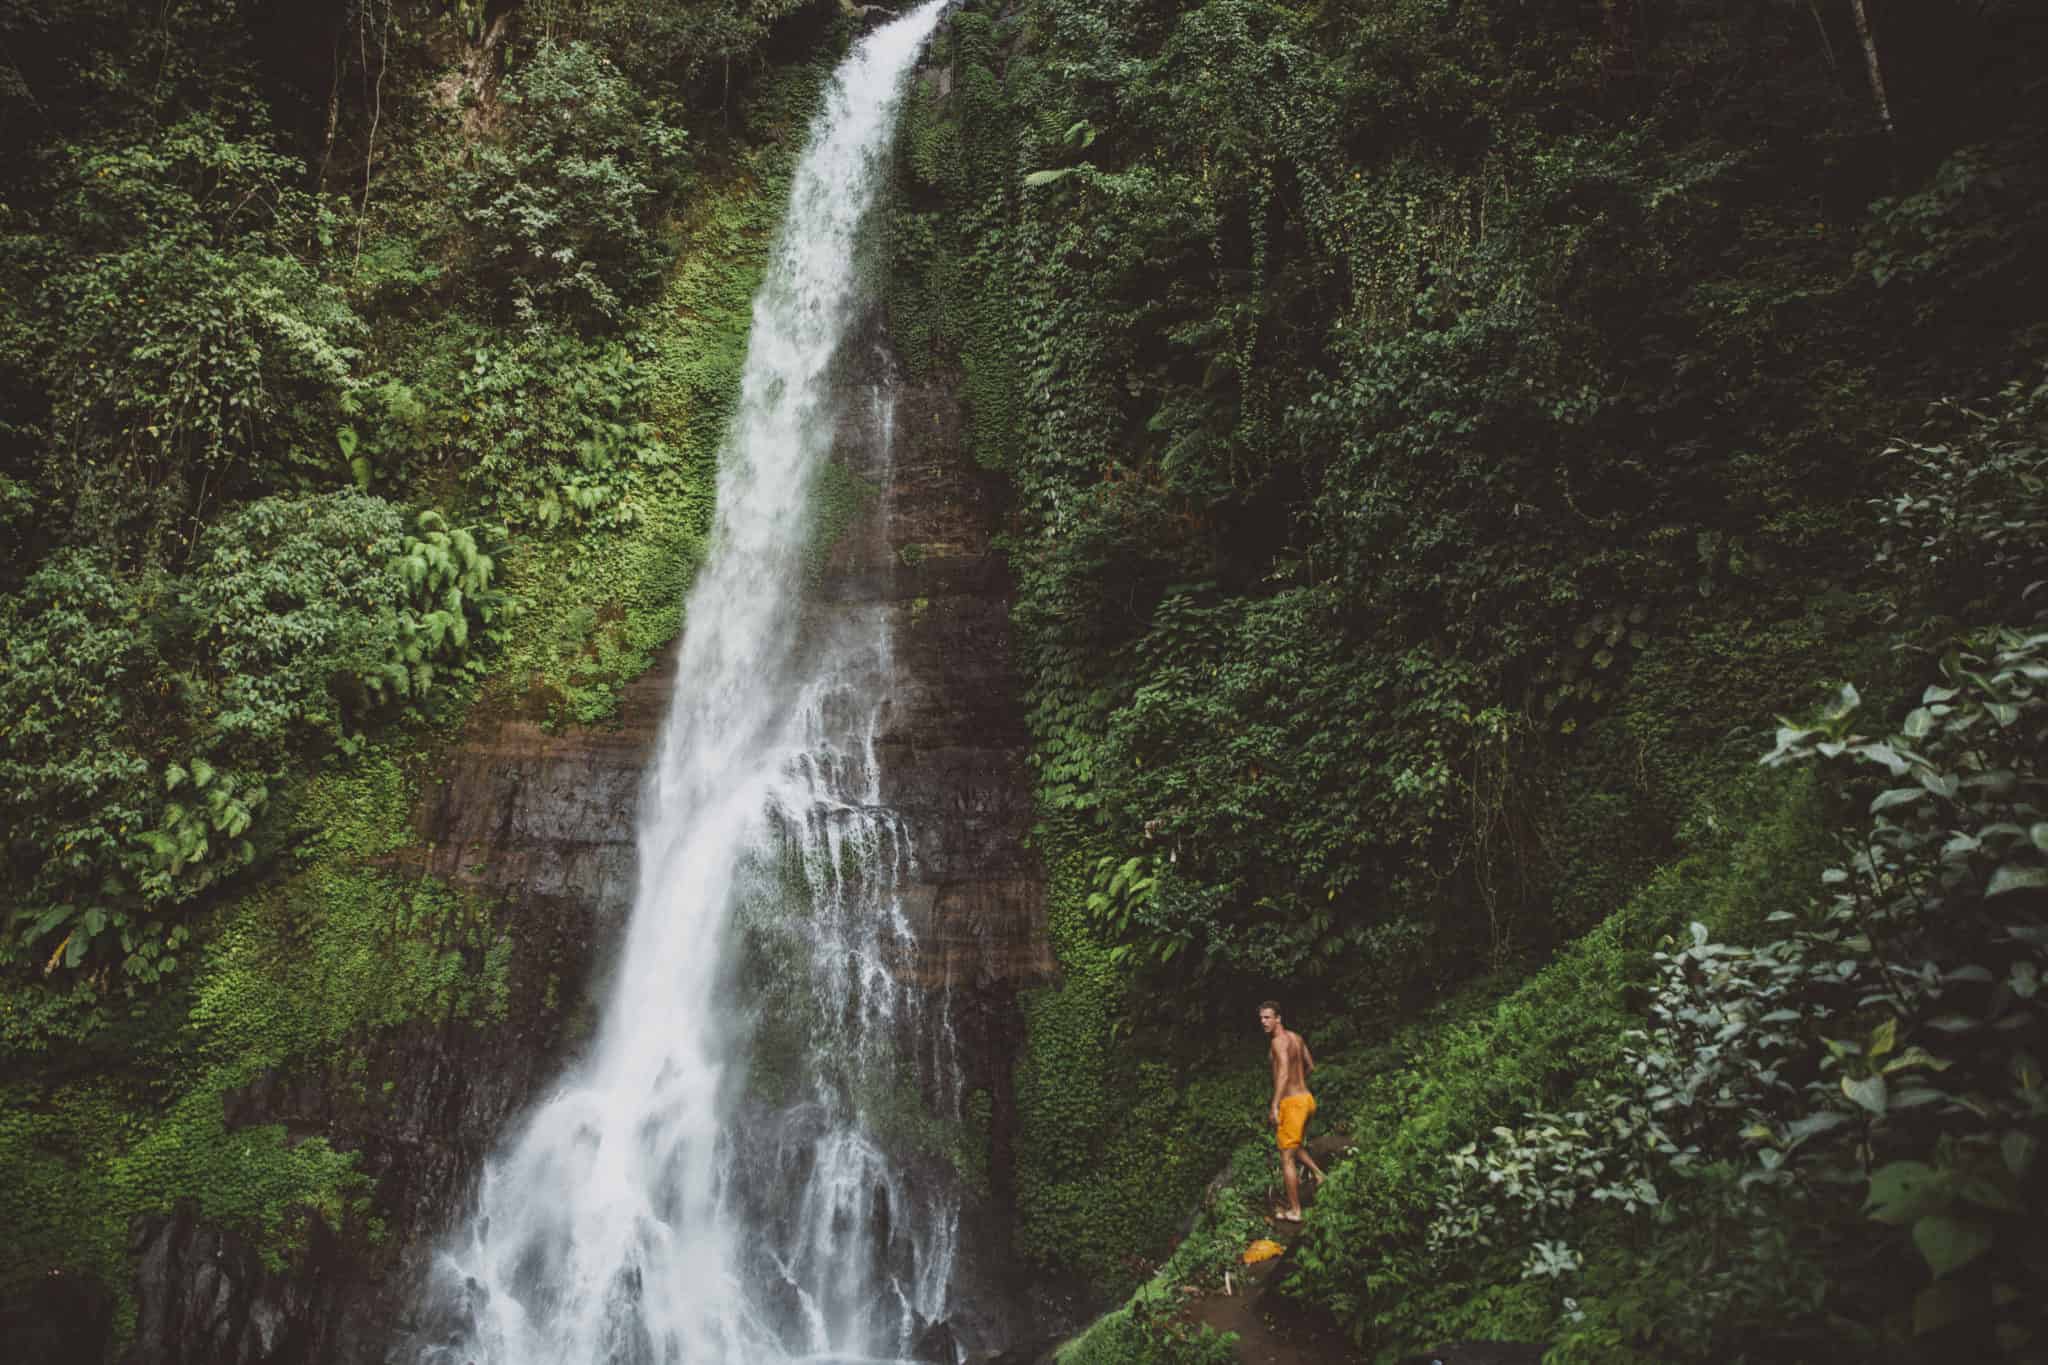 Best Instagram Spots In Bali - Git Git Waterfall - TheMandagies.com